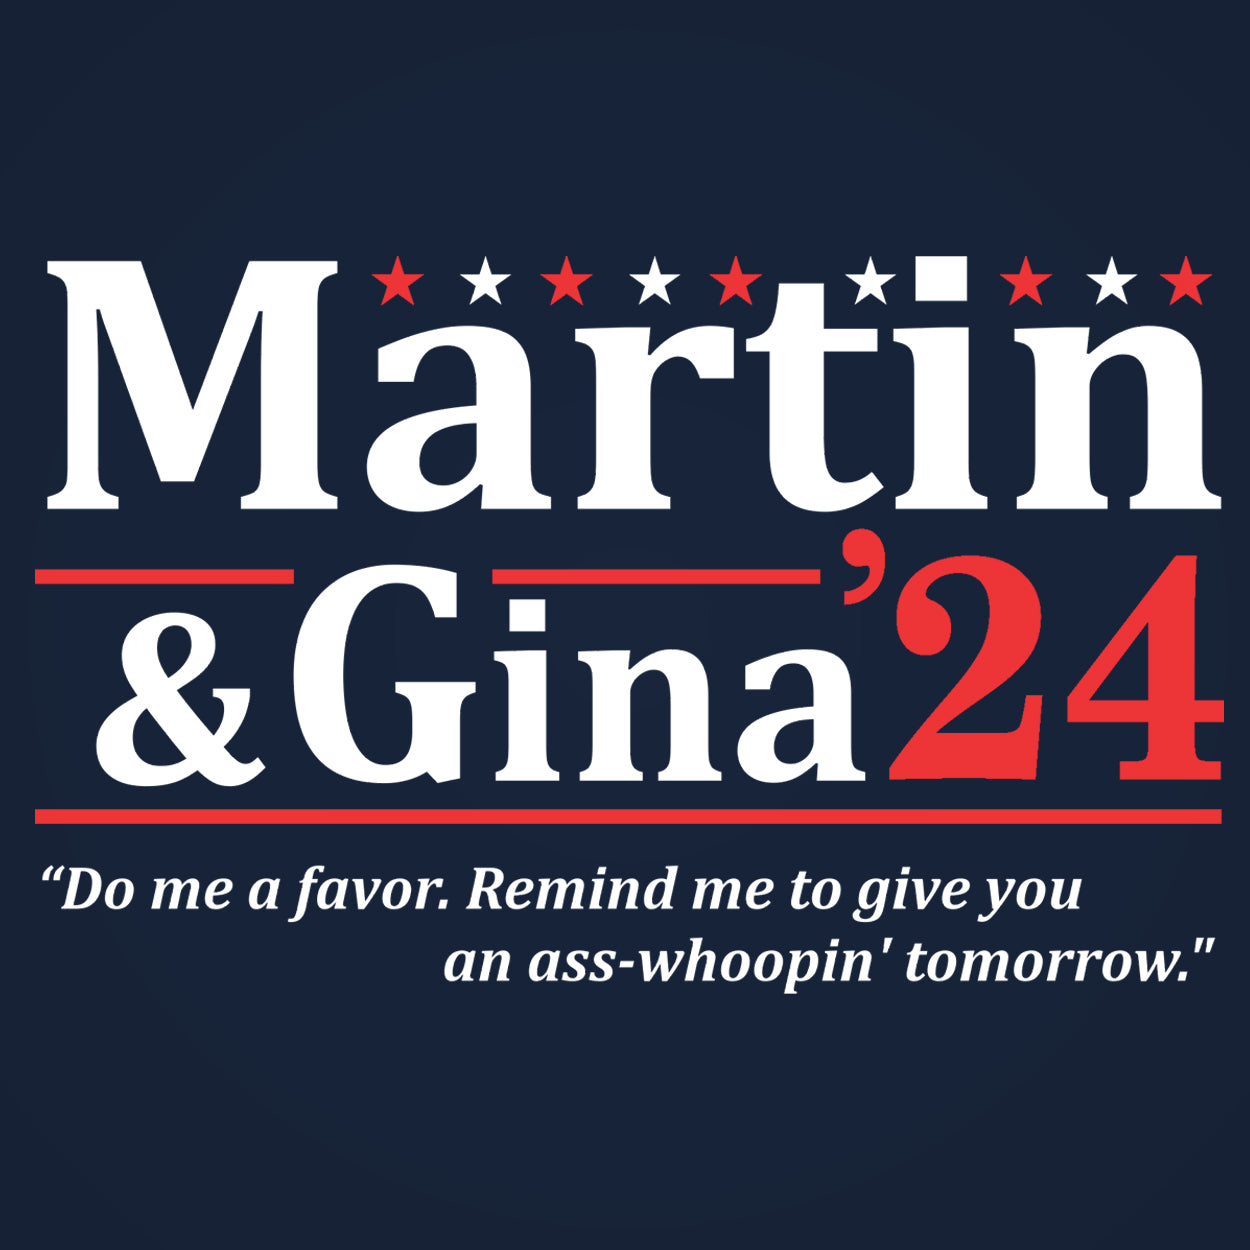 Martin and Gina 2024 Election Tshirt - Donkey Tees